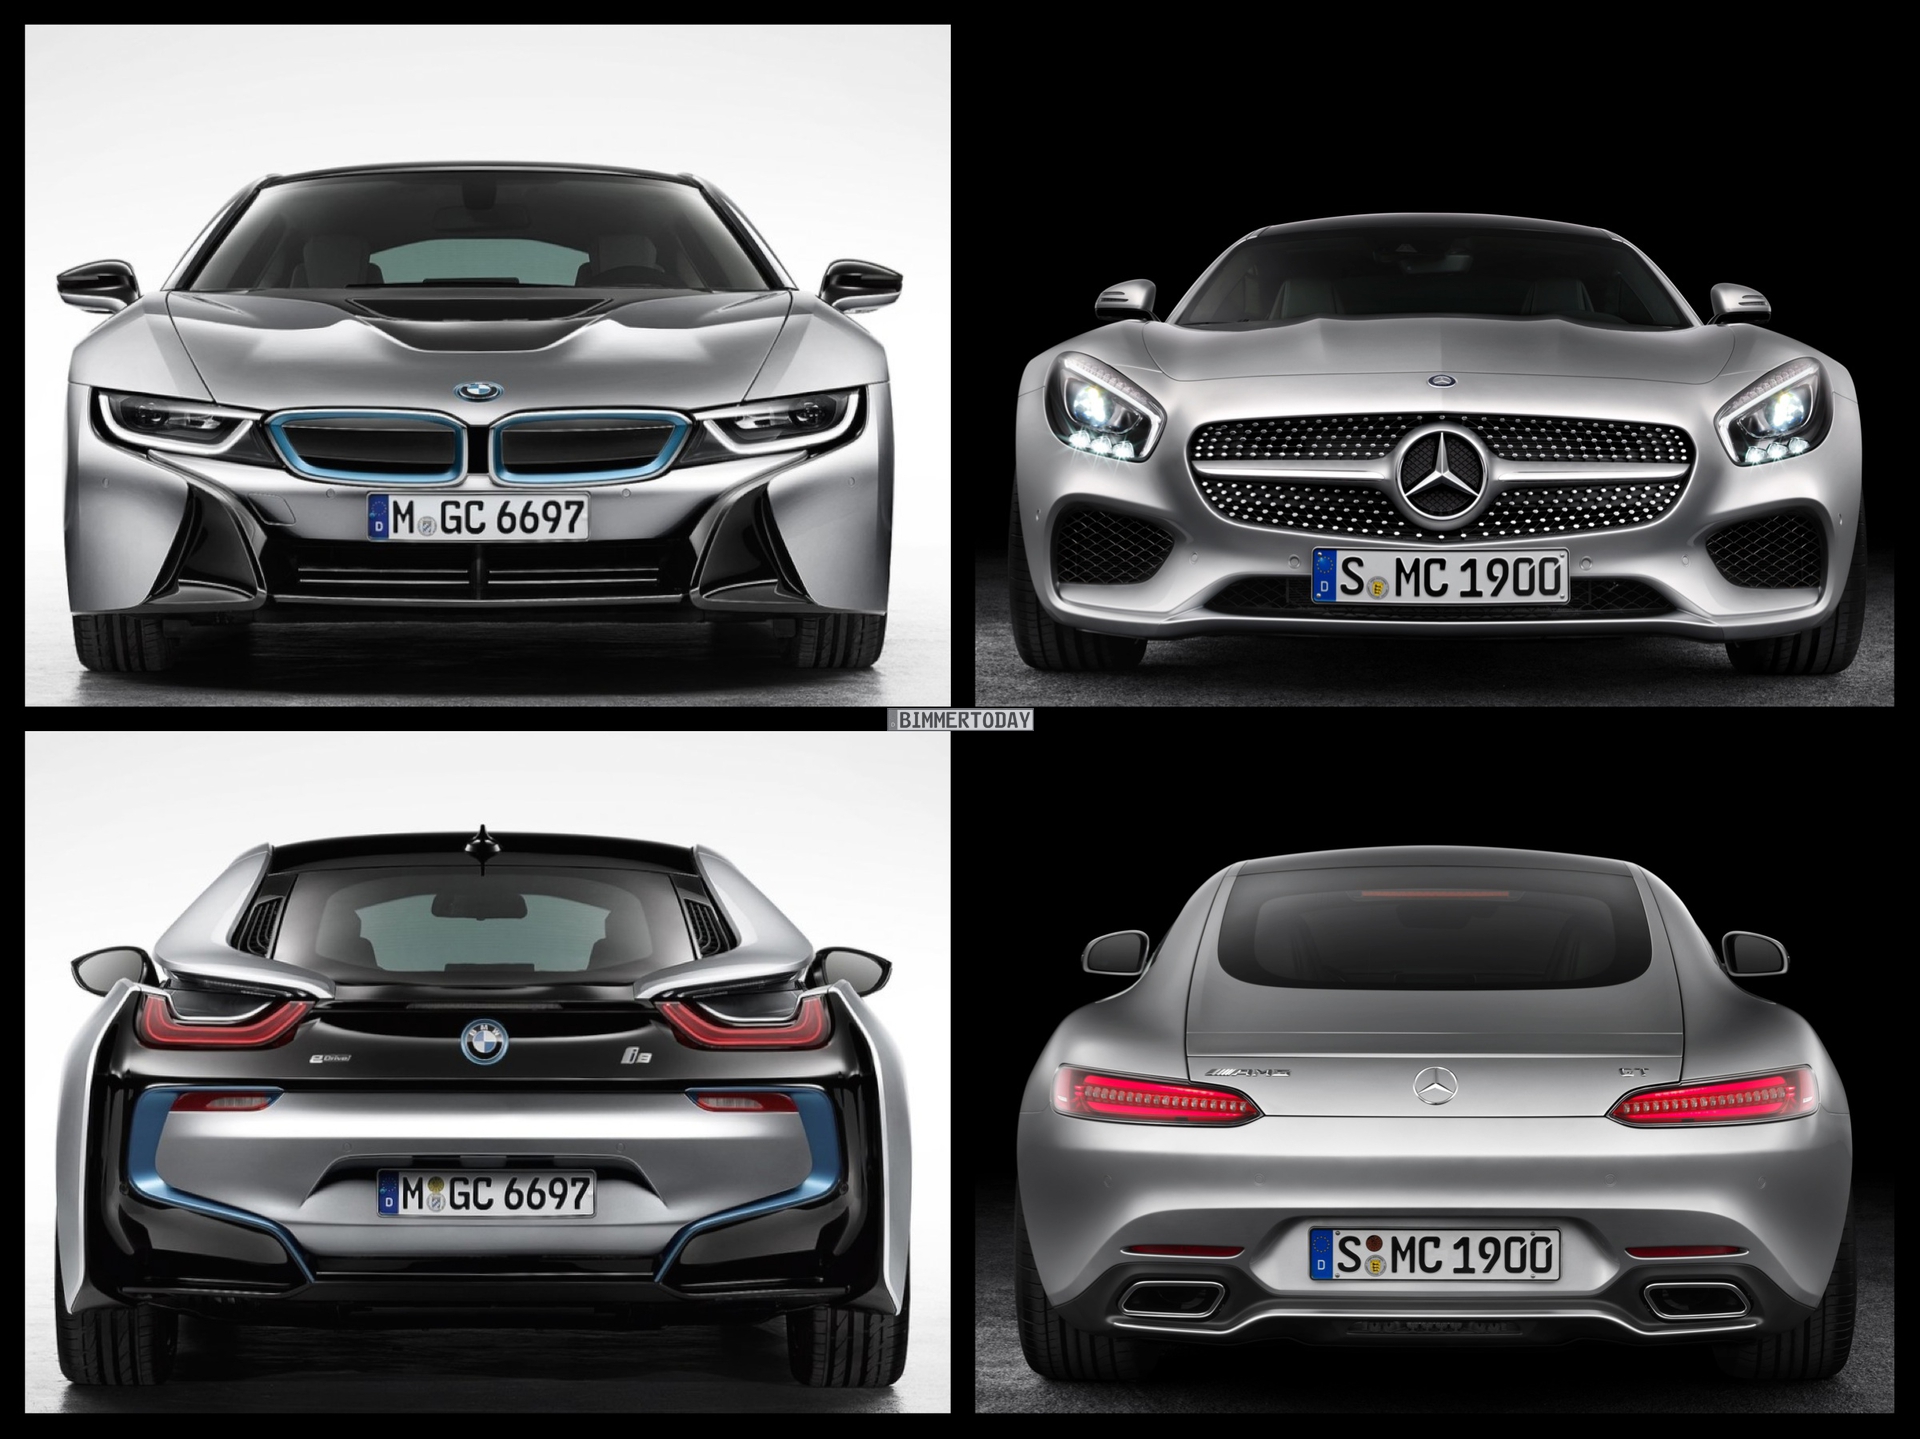 Bild-Vergleich-BMW-i8-Mercedes-Benz-AMG-GT-2014-Sportwagen-05.jpg